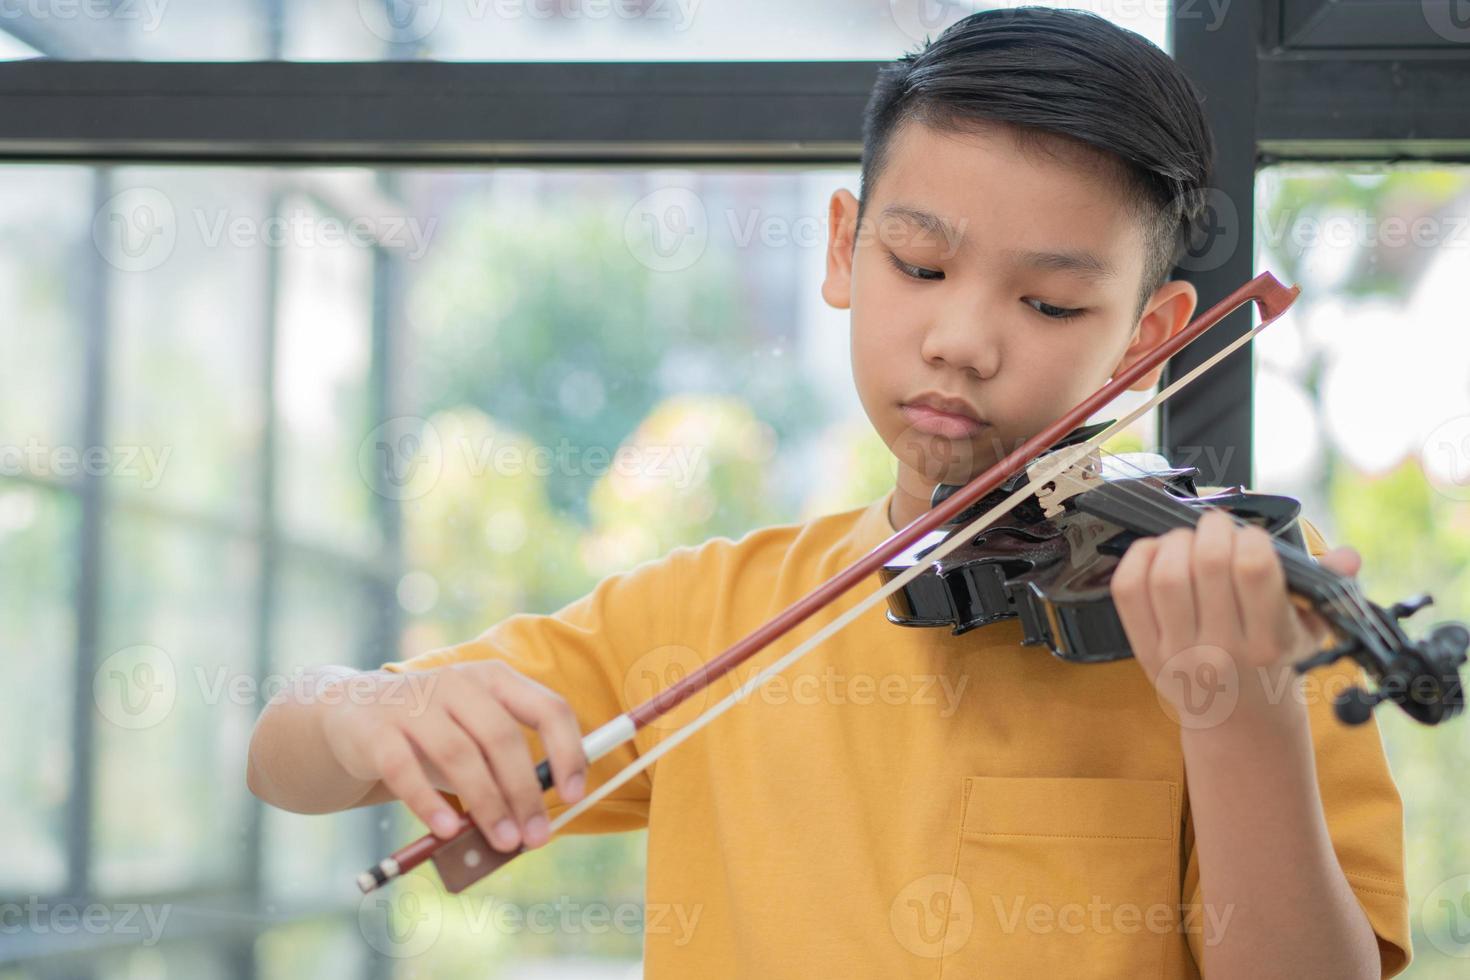 un ragazzino asiatico che suona e pratica lo strumento a corda musicale del violino contro in casa, concetto di educazione musicale, ispirazione, studente di scuola d'arte per adolescenti. foto